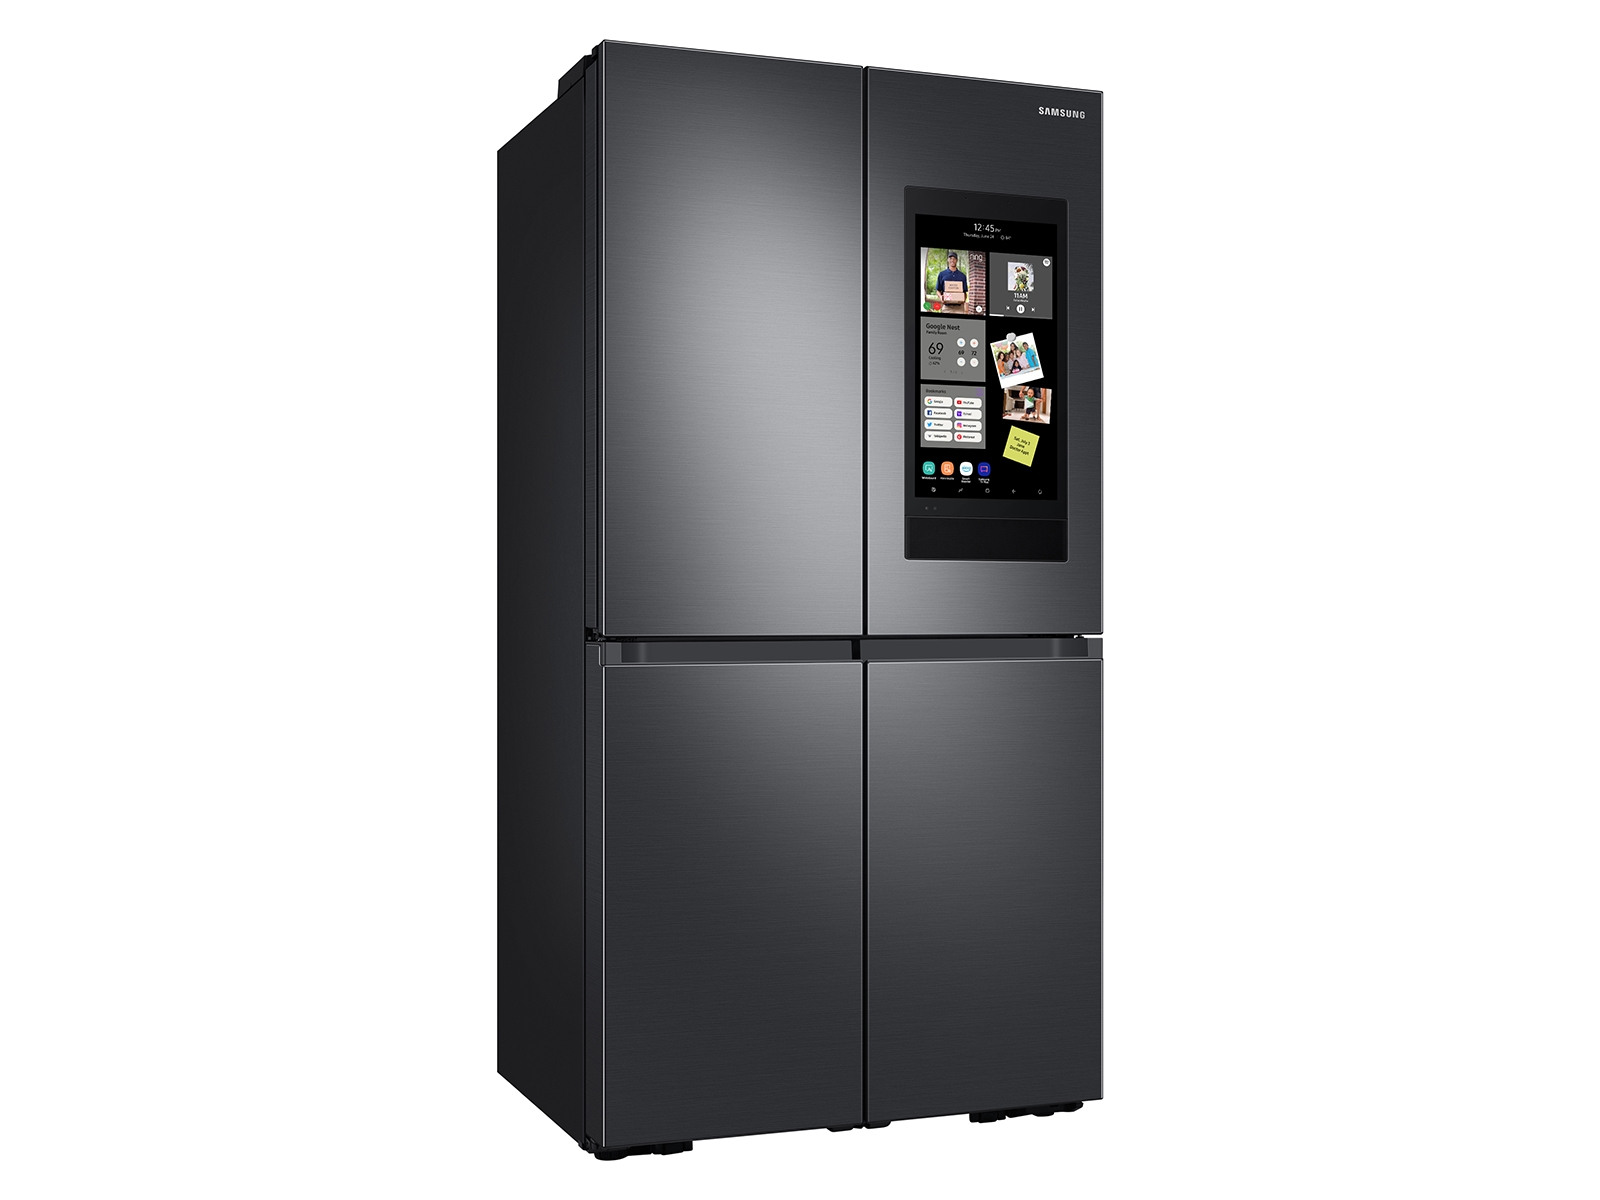 https://image-us.samsung.com/SamsungUS/home/home-appliances/refrigerators/06292022/rf23a9771sg/RF23A9771SG_03_Black_SCOM.jpg?$product-details-jpg$